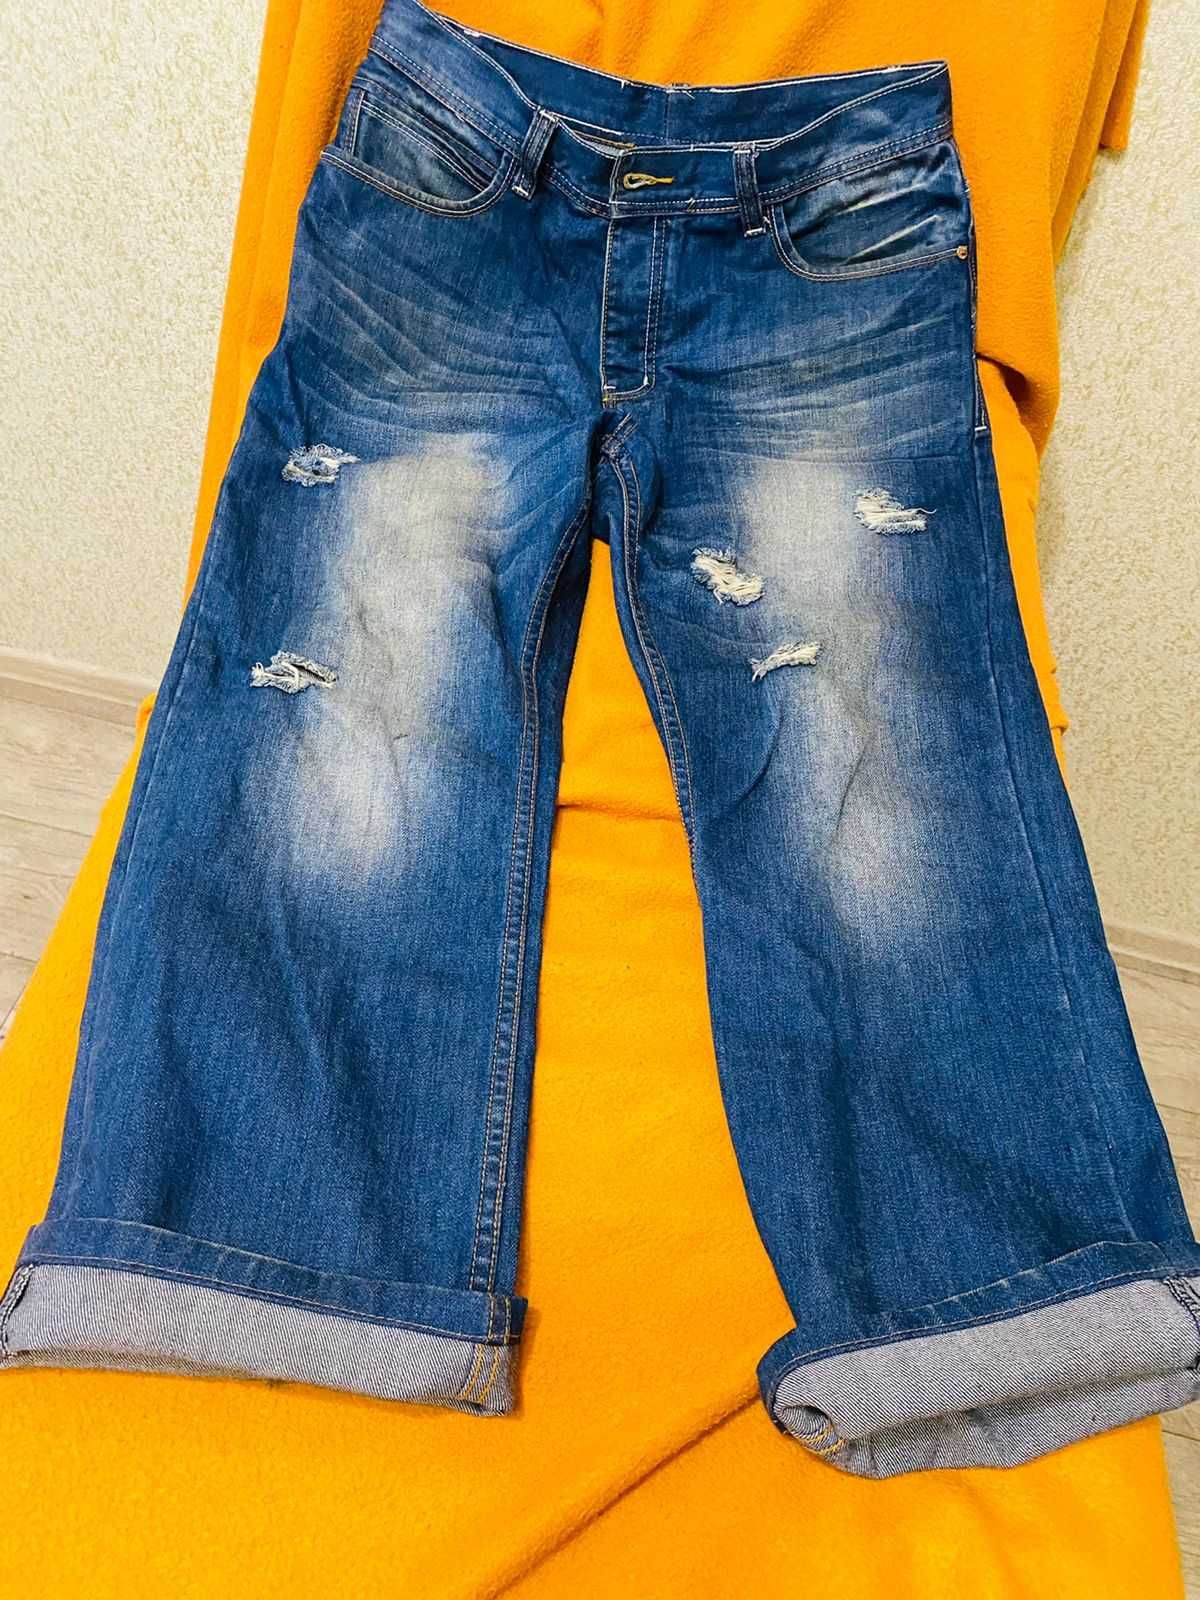 Брюки джинсовые  Турция  стрэйч